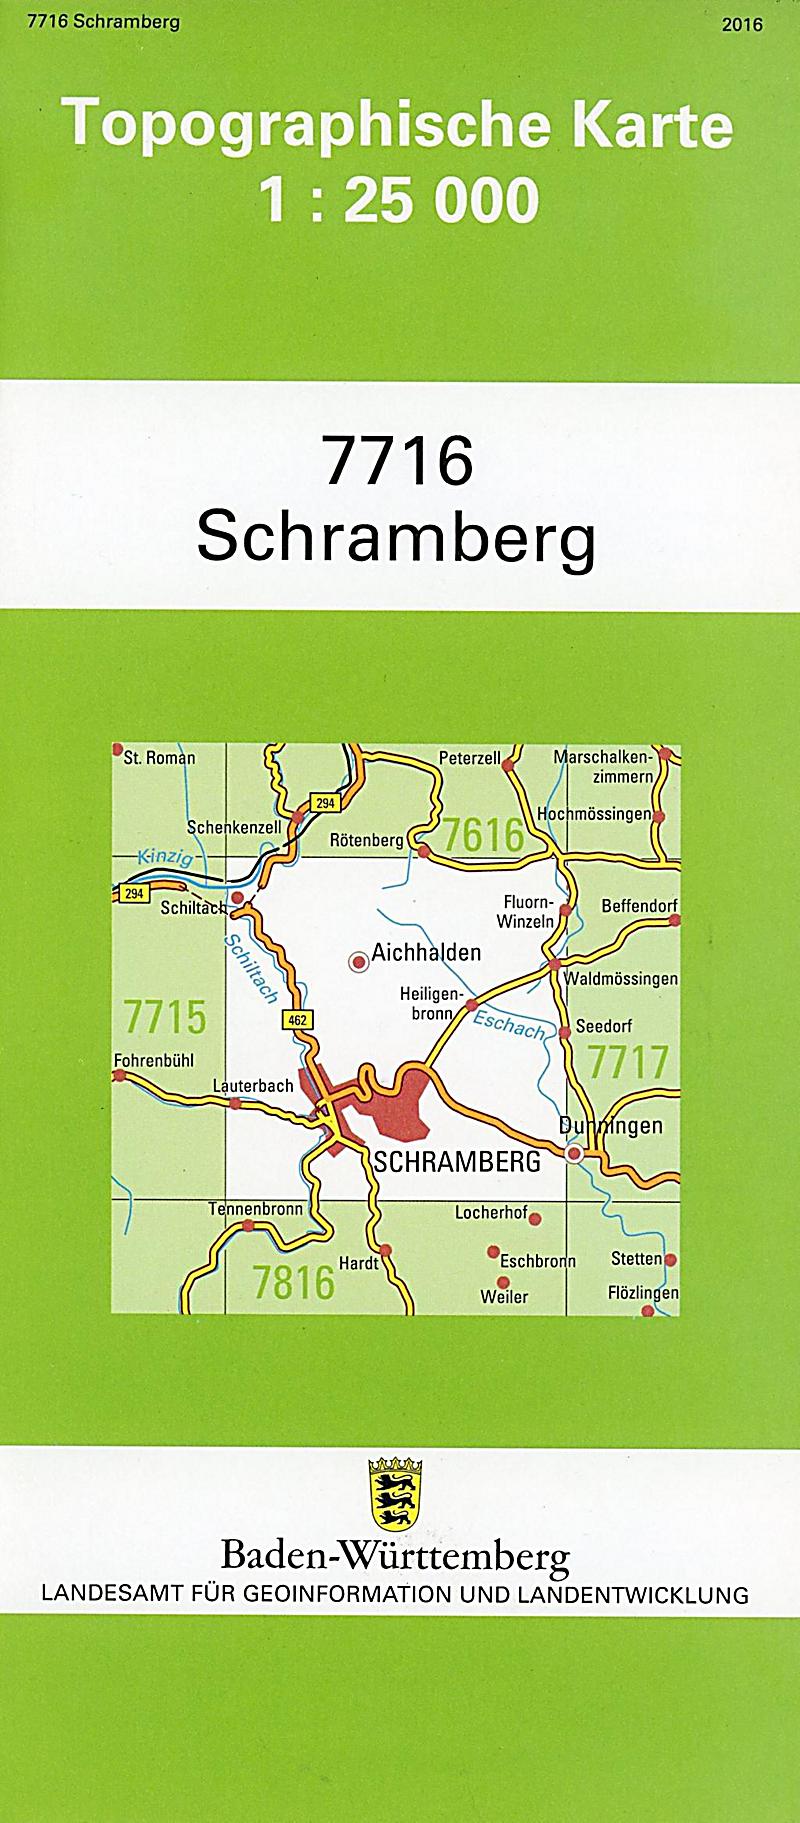 Topographische Karte Baden-Württemberg Schramberg Buch - Weltbild.at